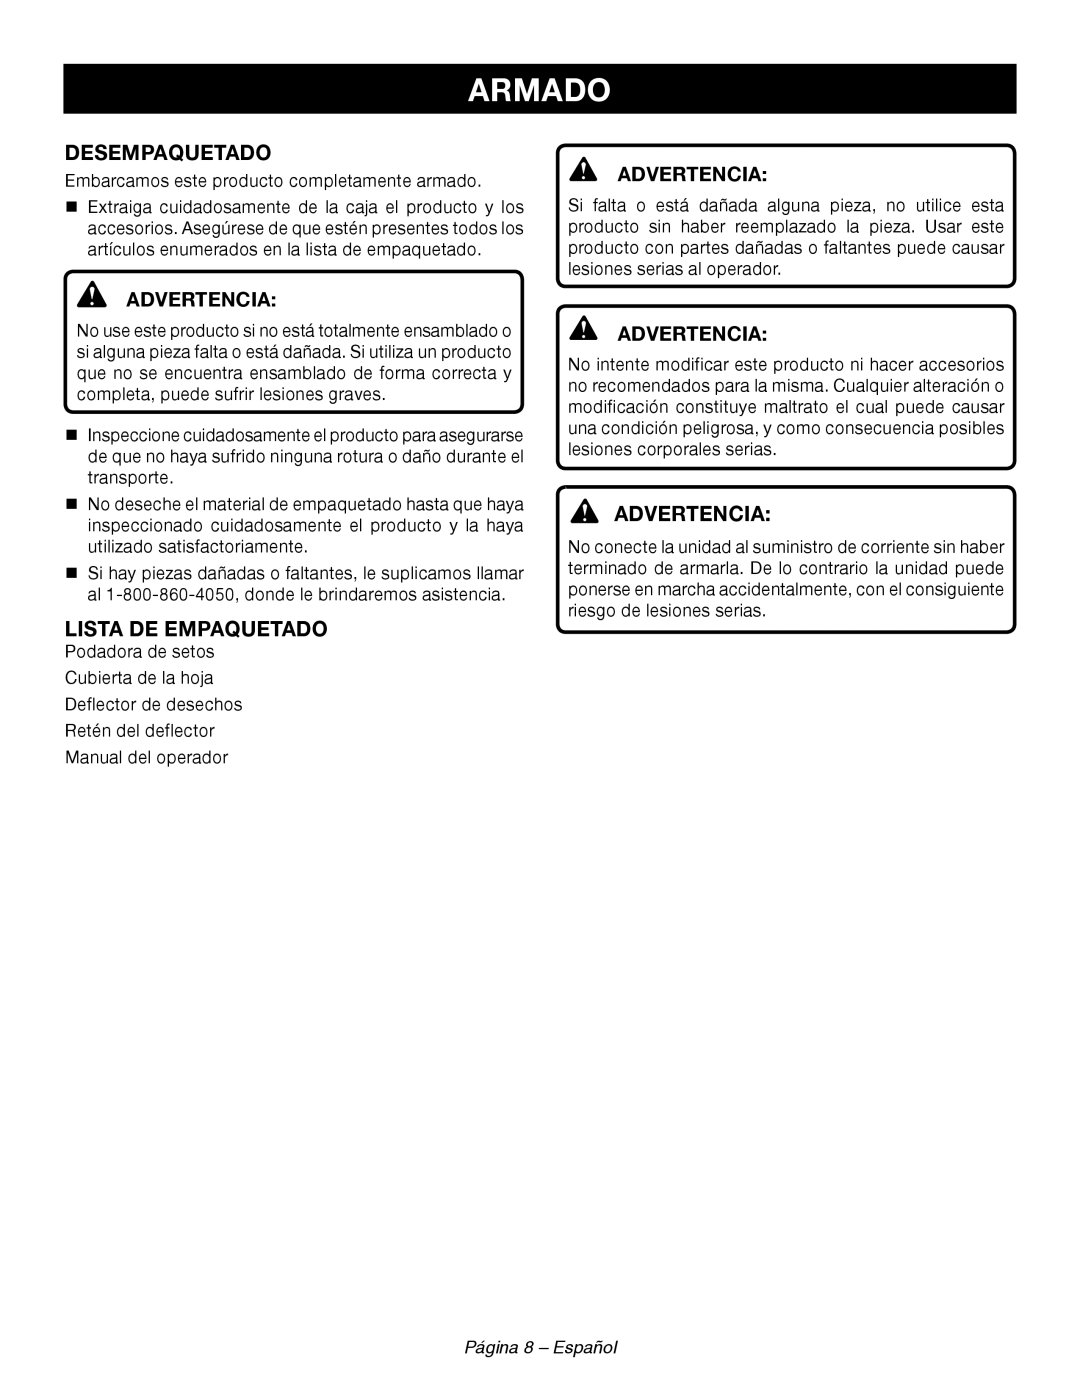 Ryobi RY44140 manuel dutilisation Armado, Desempaquetado, Lista De Empaquetado, Advertencia, Página 8 - Español 